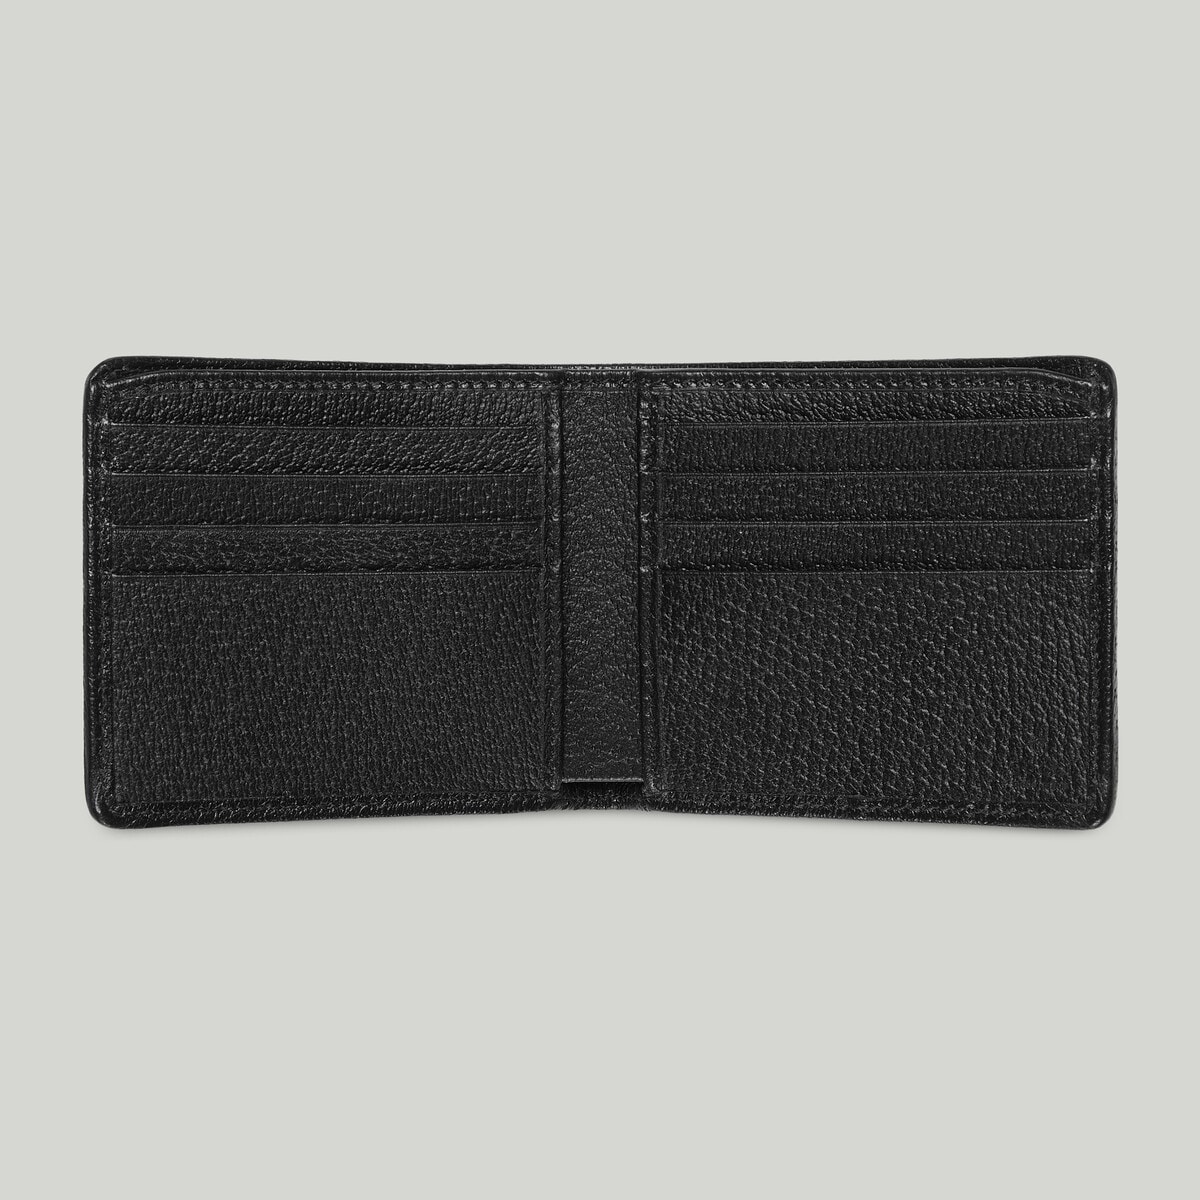 Jumbo GG wallet - 2